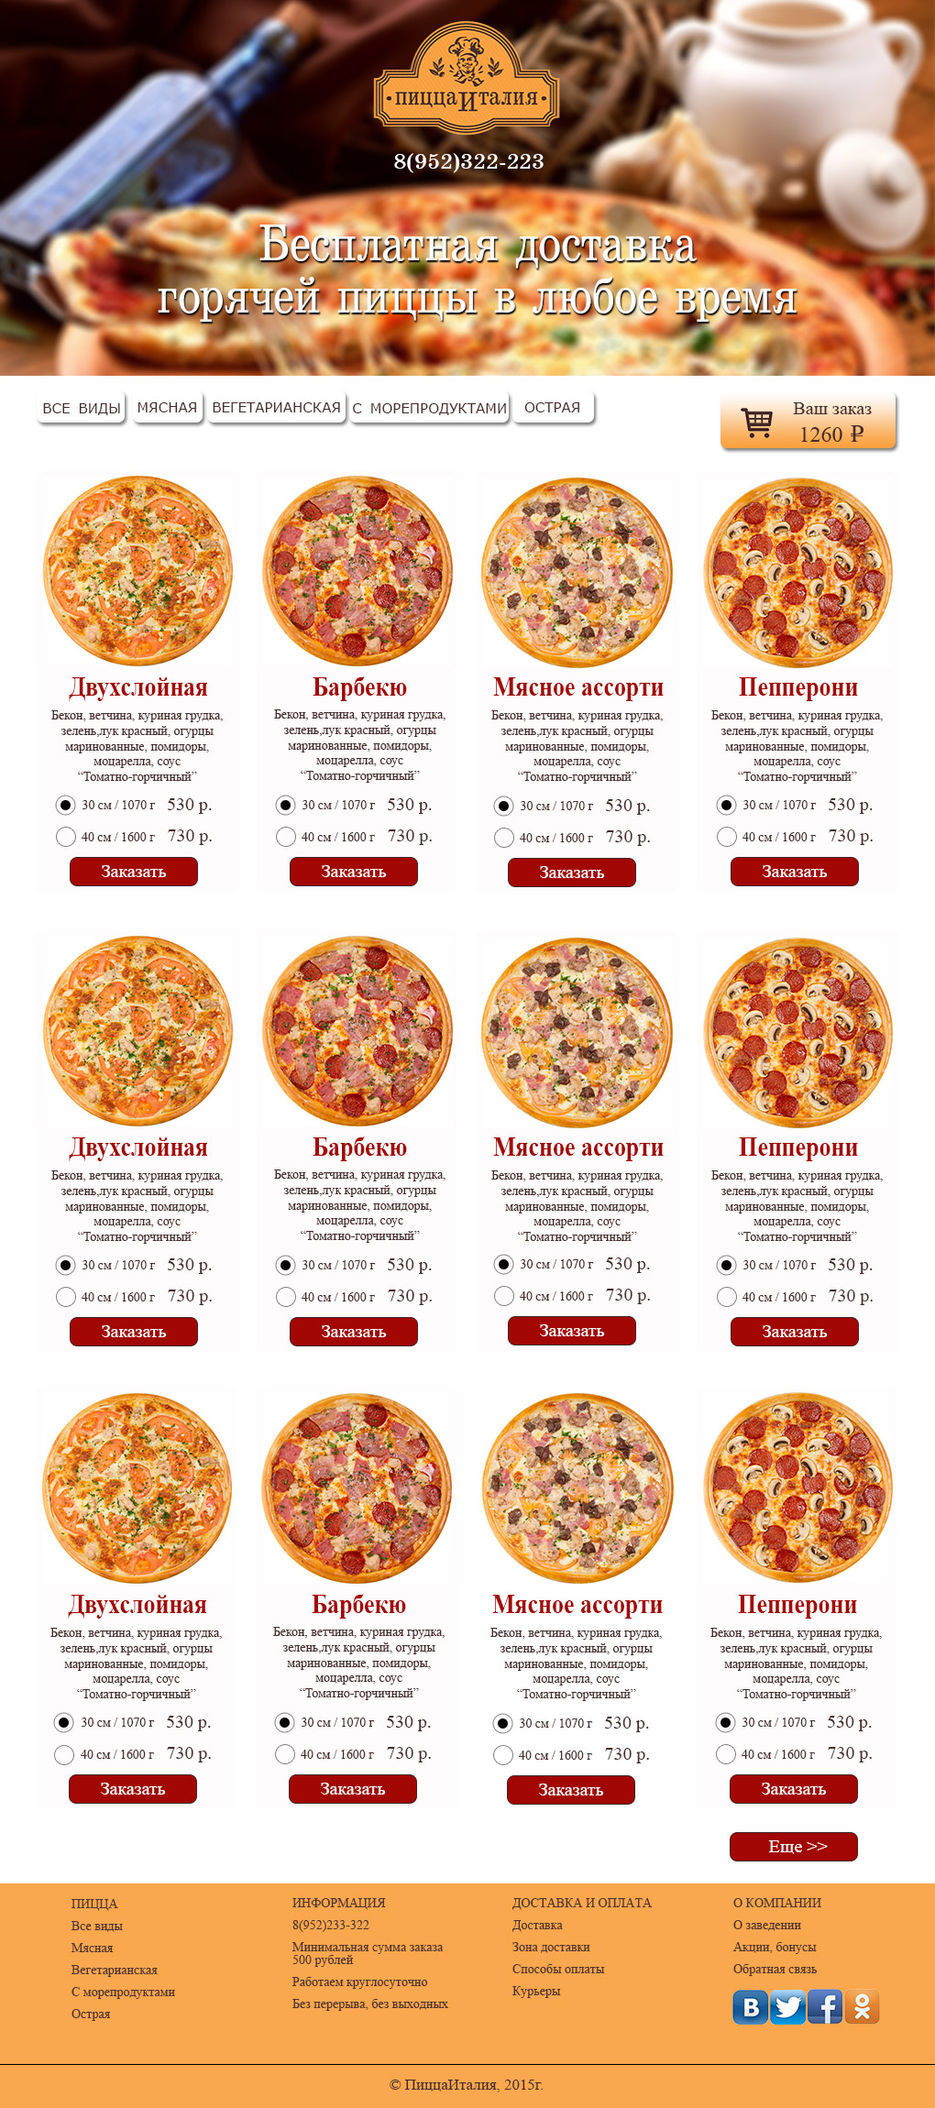 ассортимент пиццы в картинках и рецепты фото 72